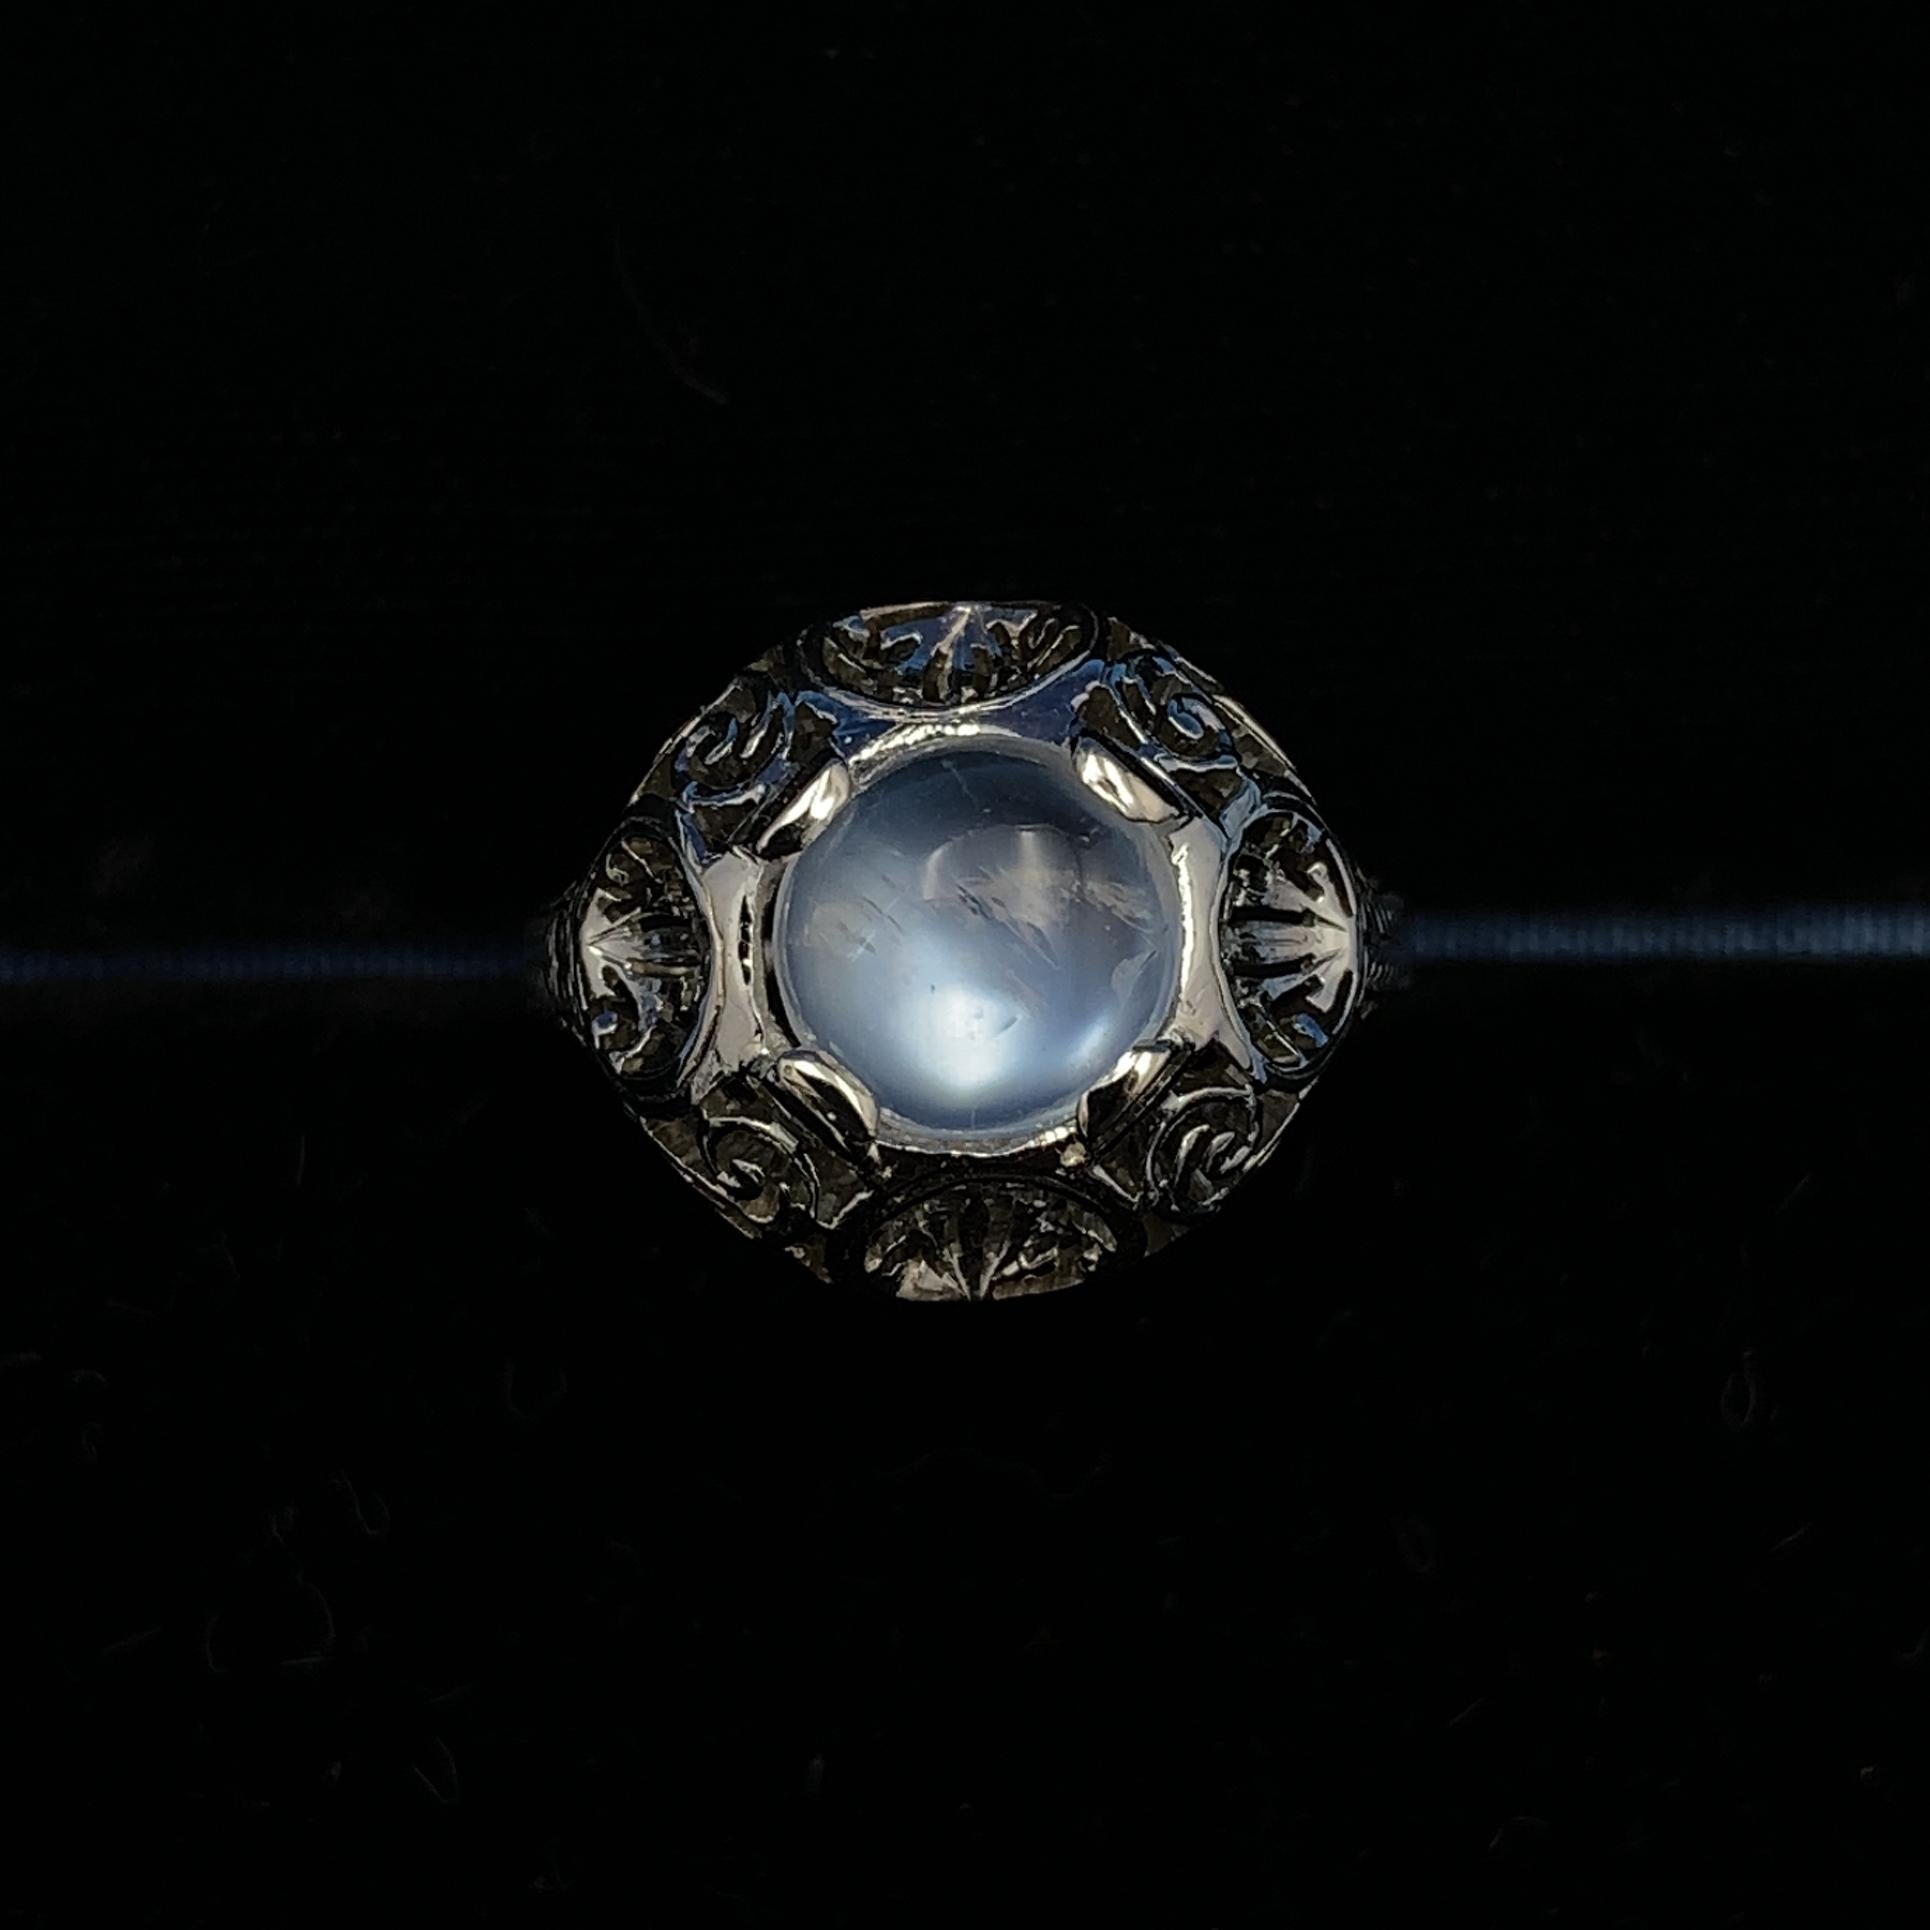 filigraner Ring aus 18 Karat Weißgold mit einem runden Mondstein mit blauem Blitz. Die Fassung ist im Art Deco-Stil gehalten und von Hand durchbohrt. Der Mondstein  wiegt 1,66 Karat und misst etwa 8 mm. Der Ring passt auf einen Finger der Größe 7